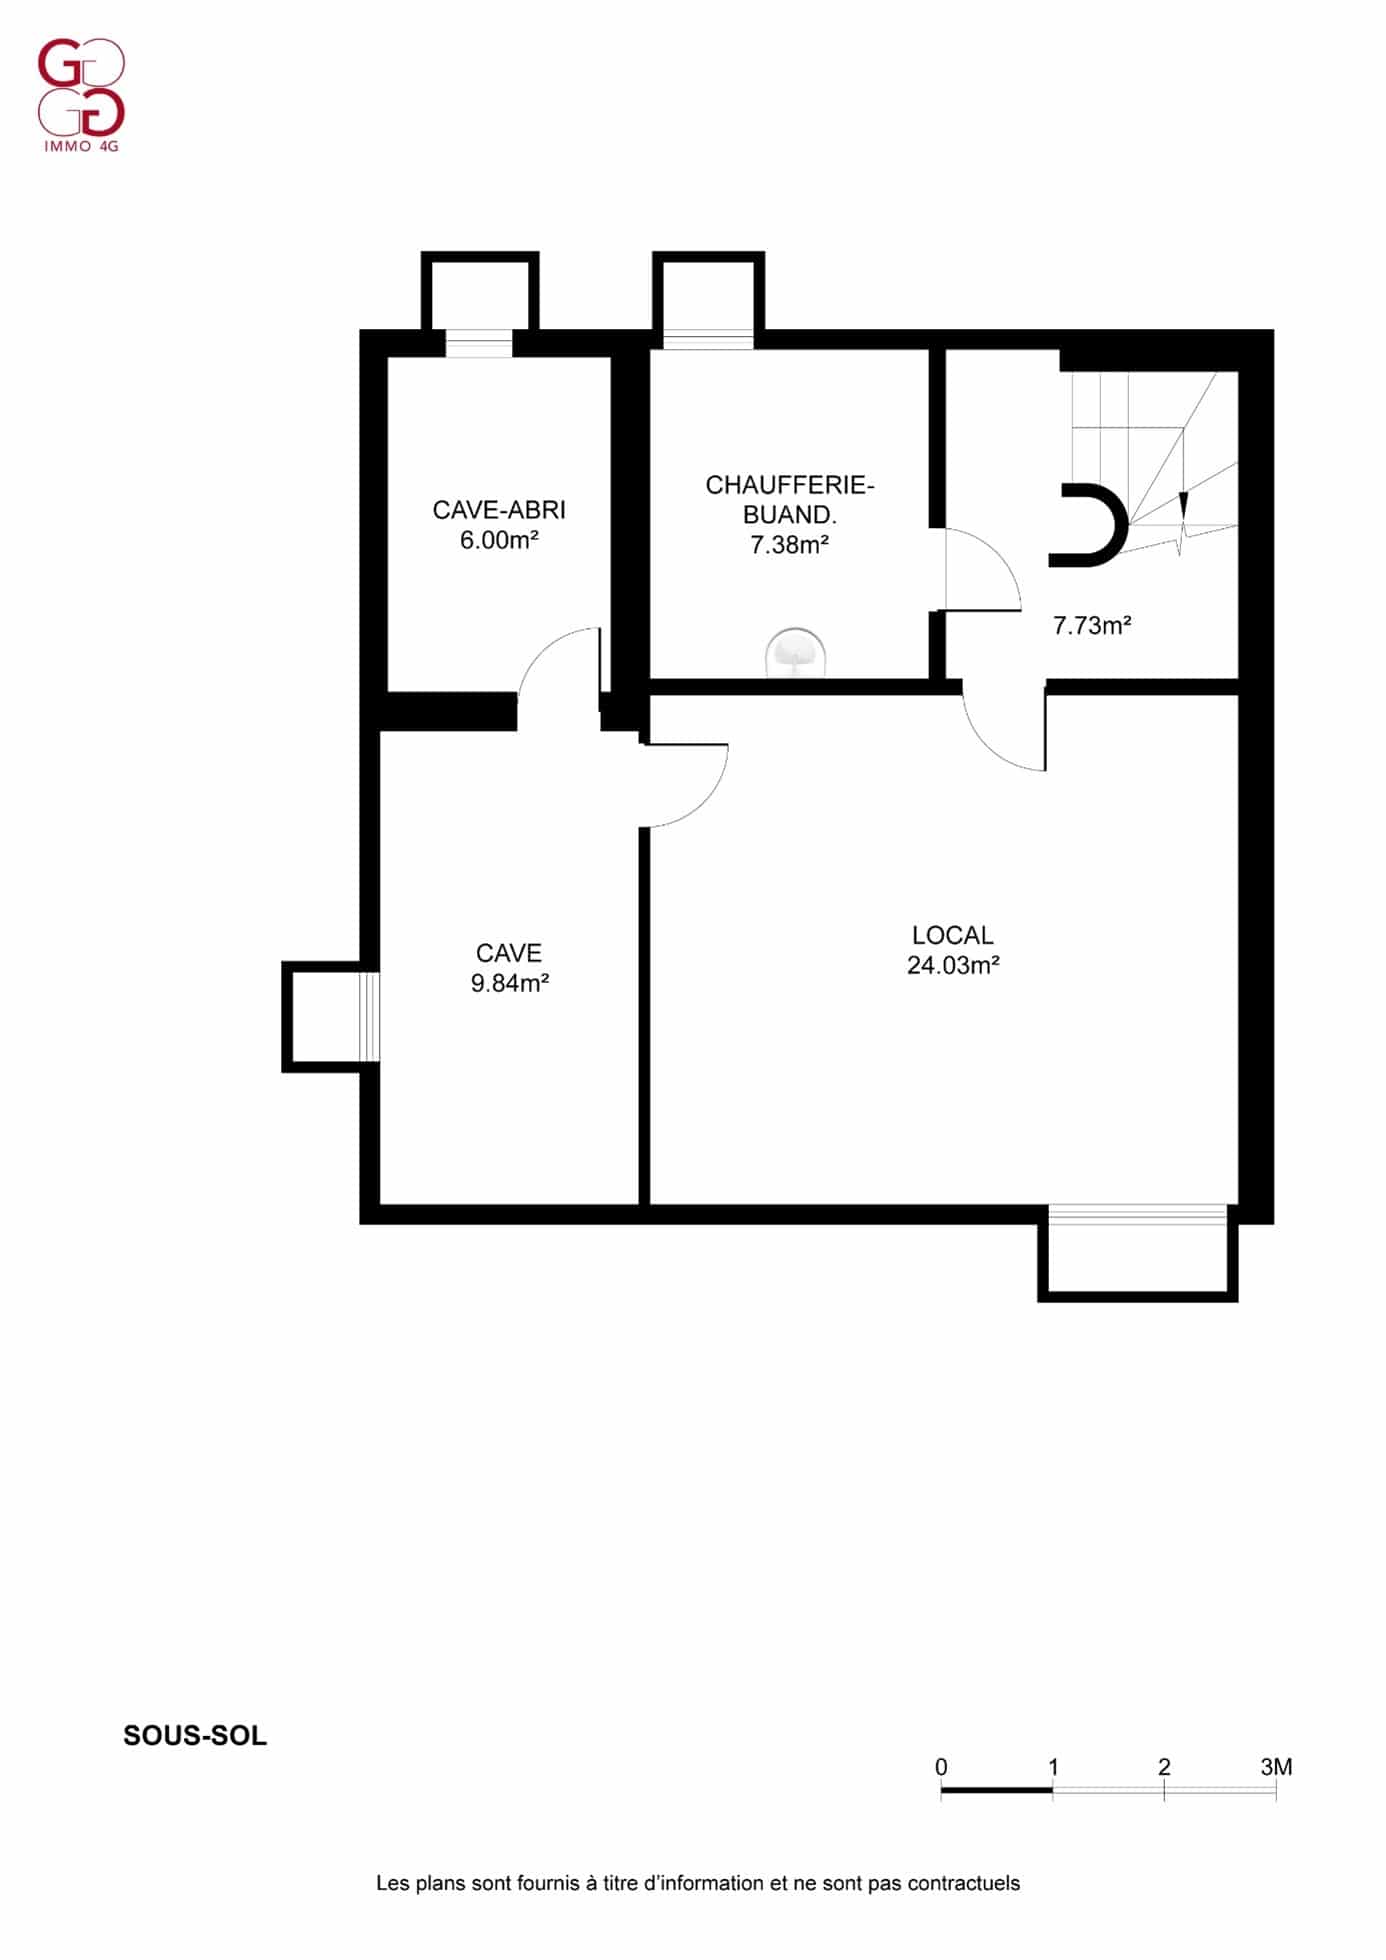 Un plan d'étage d'un appartement avec deux chambres et une salle de bain.